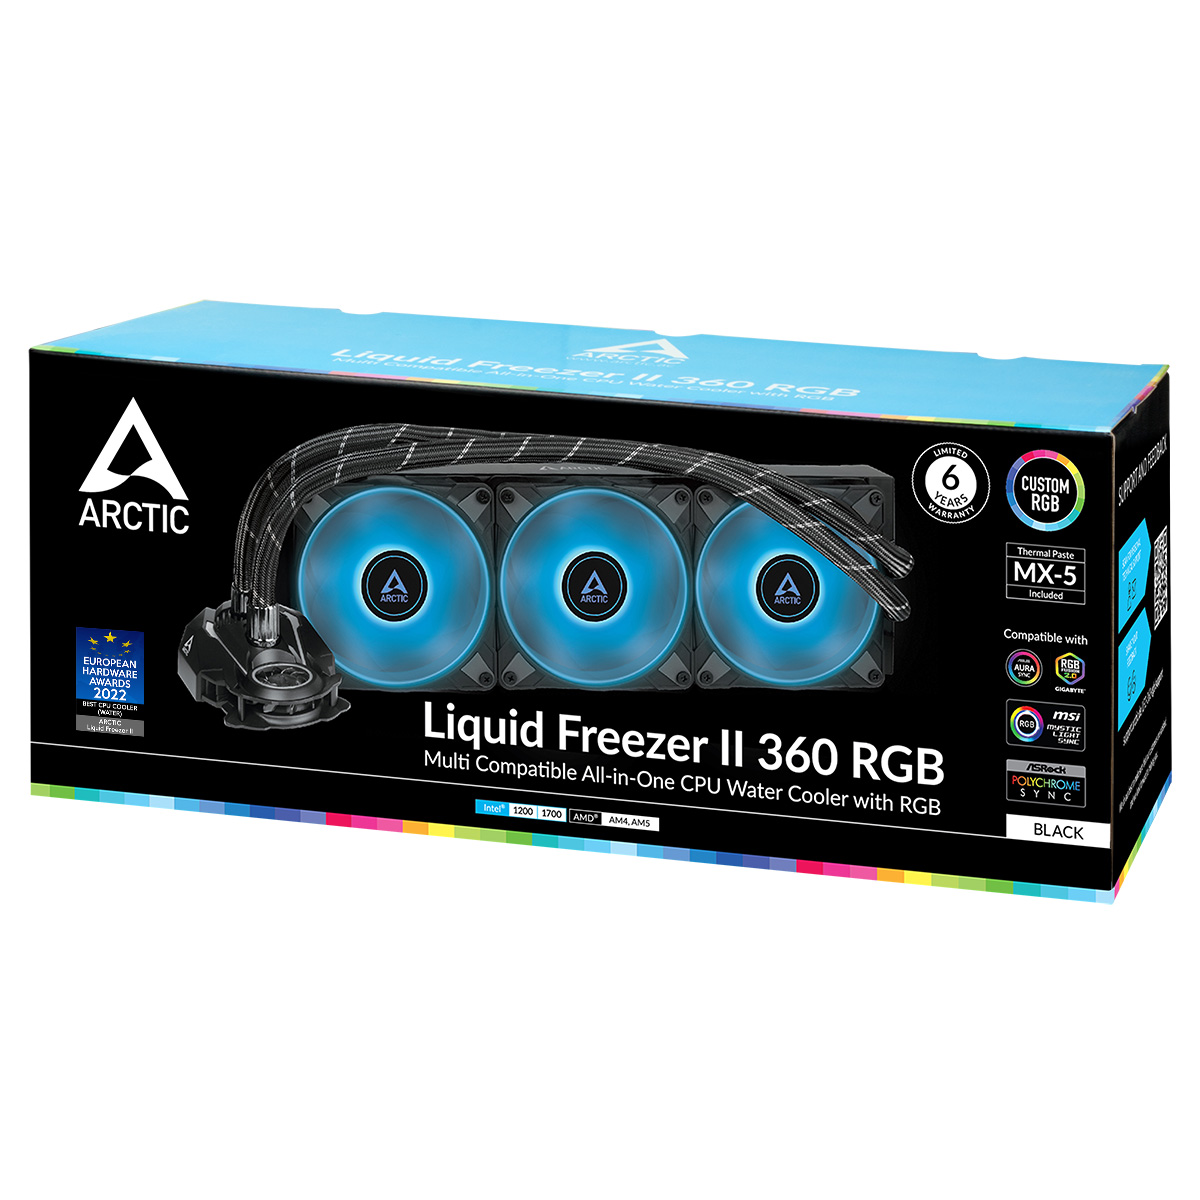 Liquid Freezer II 360 RGB